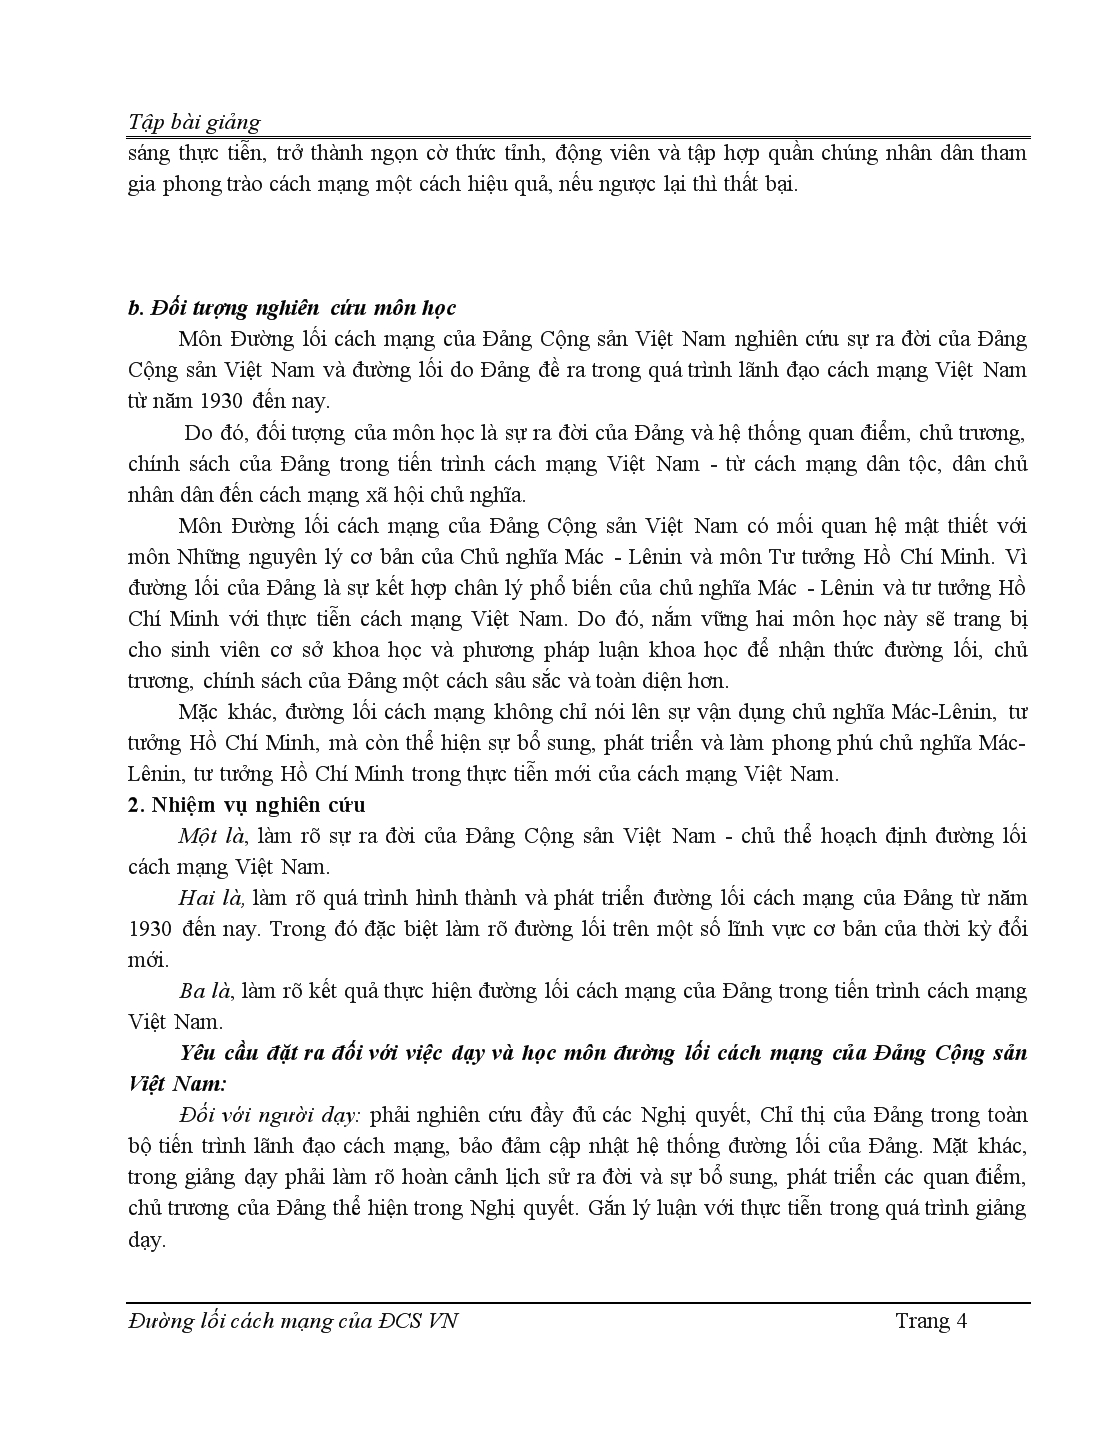 Bài giảng đường lối cách mạng của đảng cộng sản Việt Nam trang 4